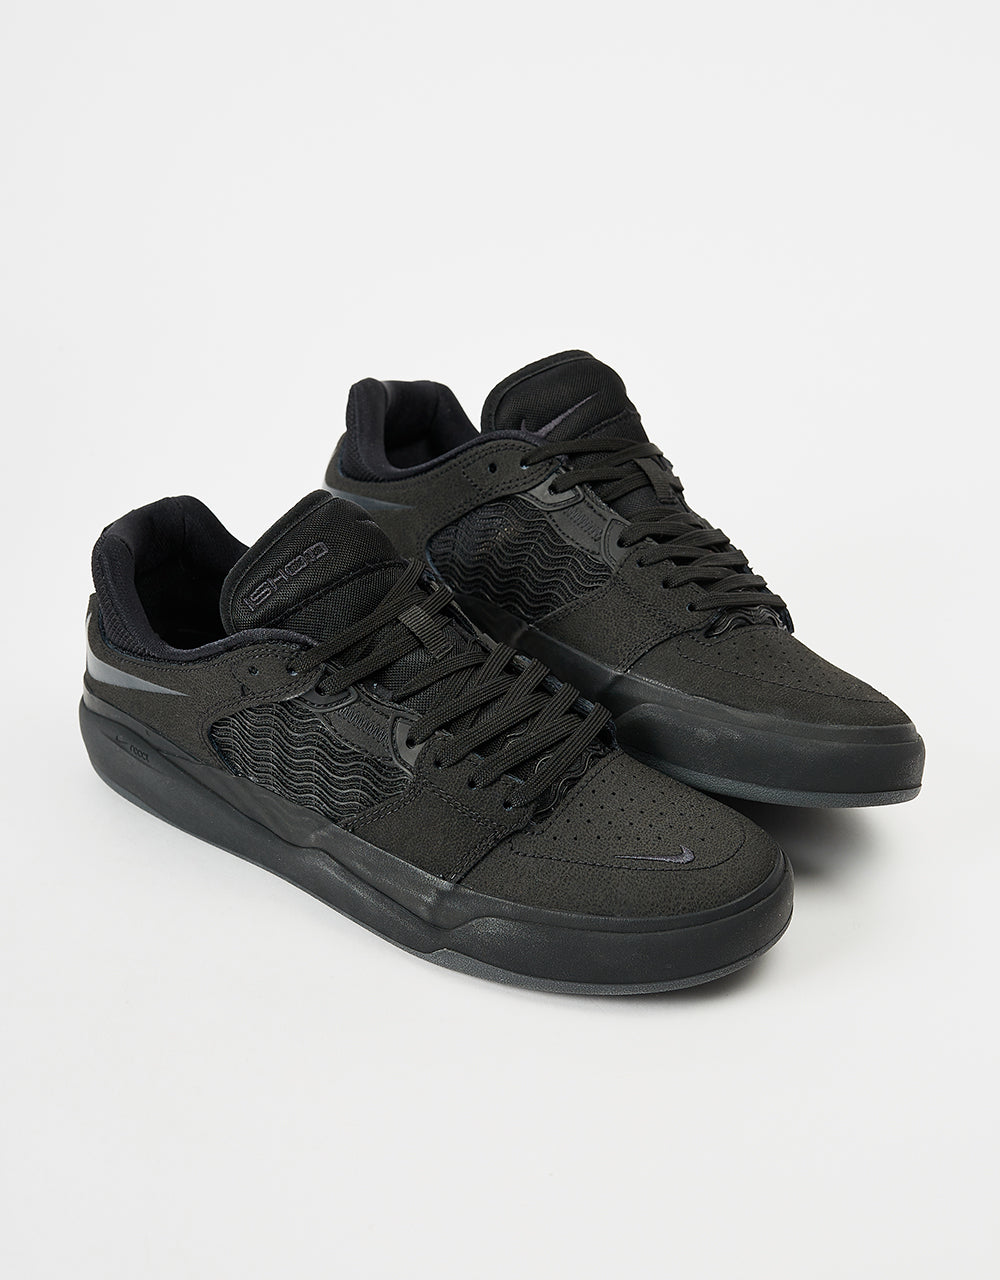 Nike SB Ishod Premium Skate Shoes - Black/Black-Black-Black – Route One